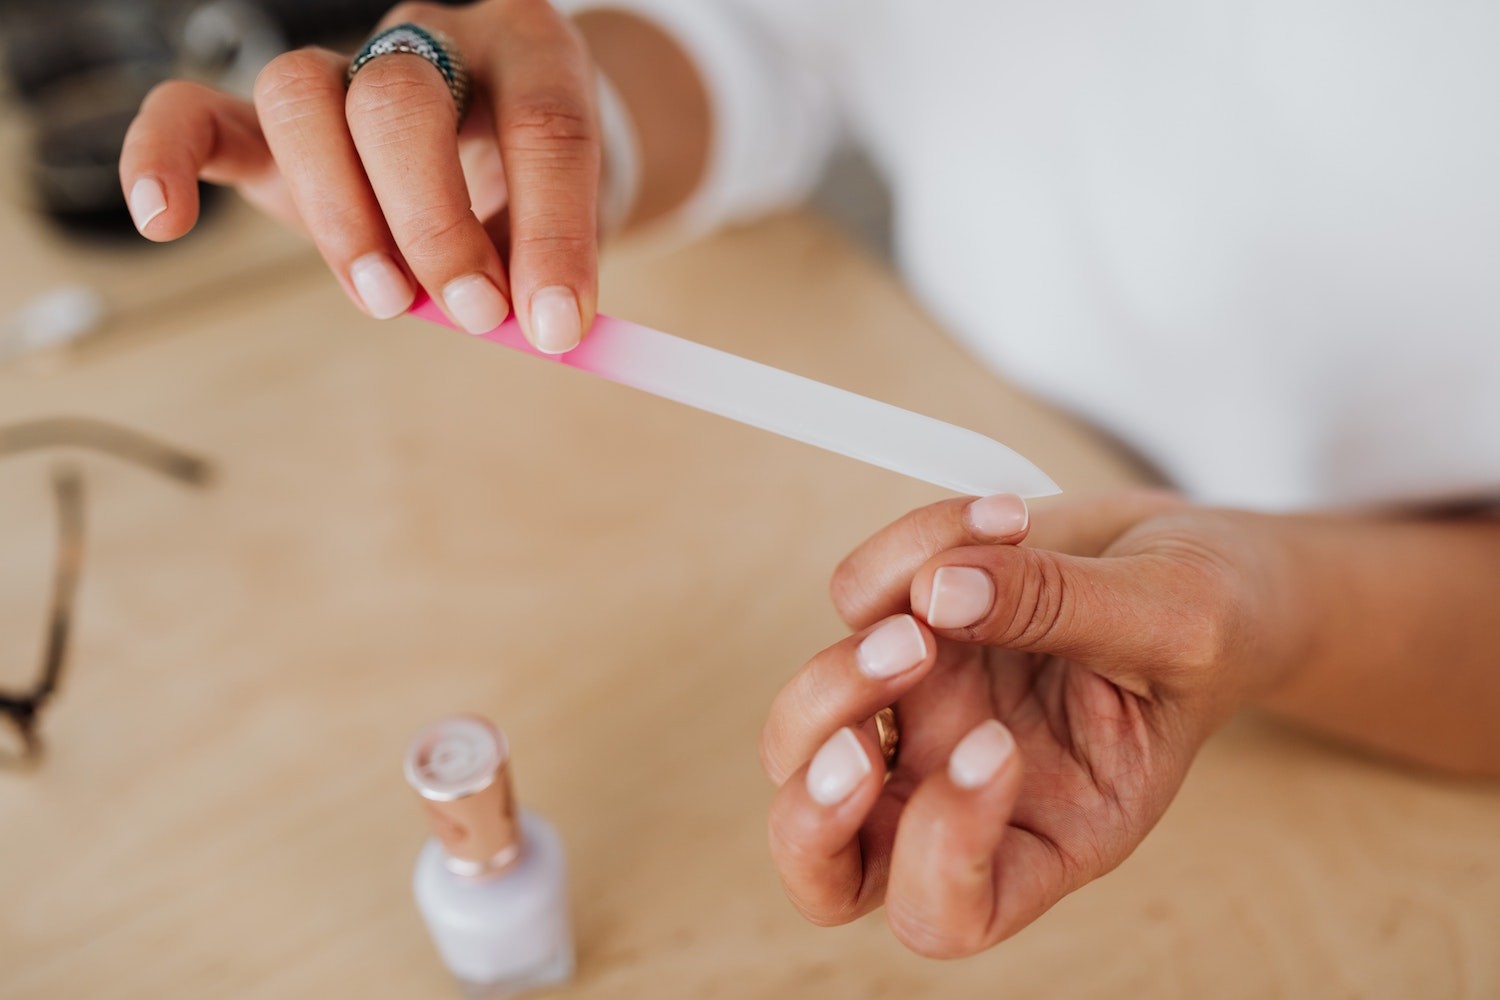 Manter as unhas lixadas e cortadas pode ser uma saída para evitar roer unhas (Foto: Pexels /  Karolina Grabowska  /CreativeCommons)